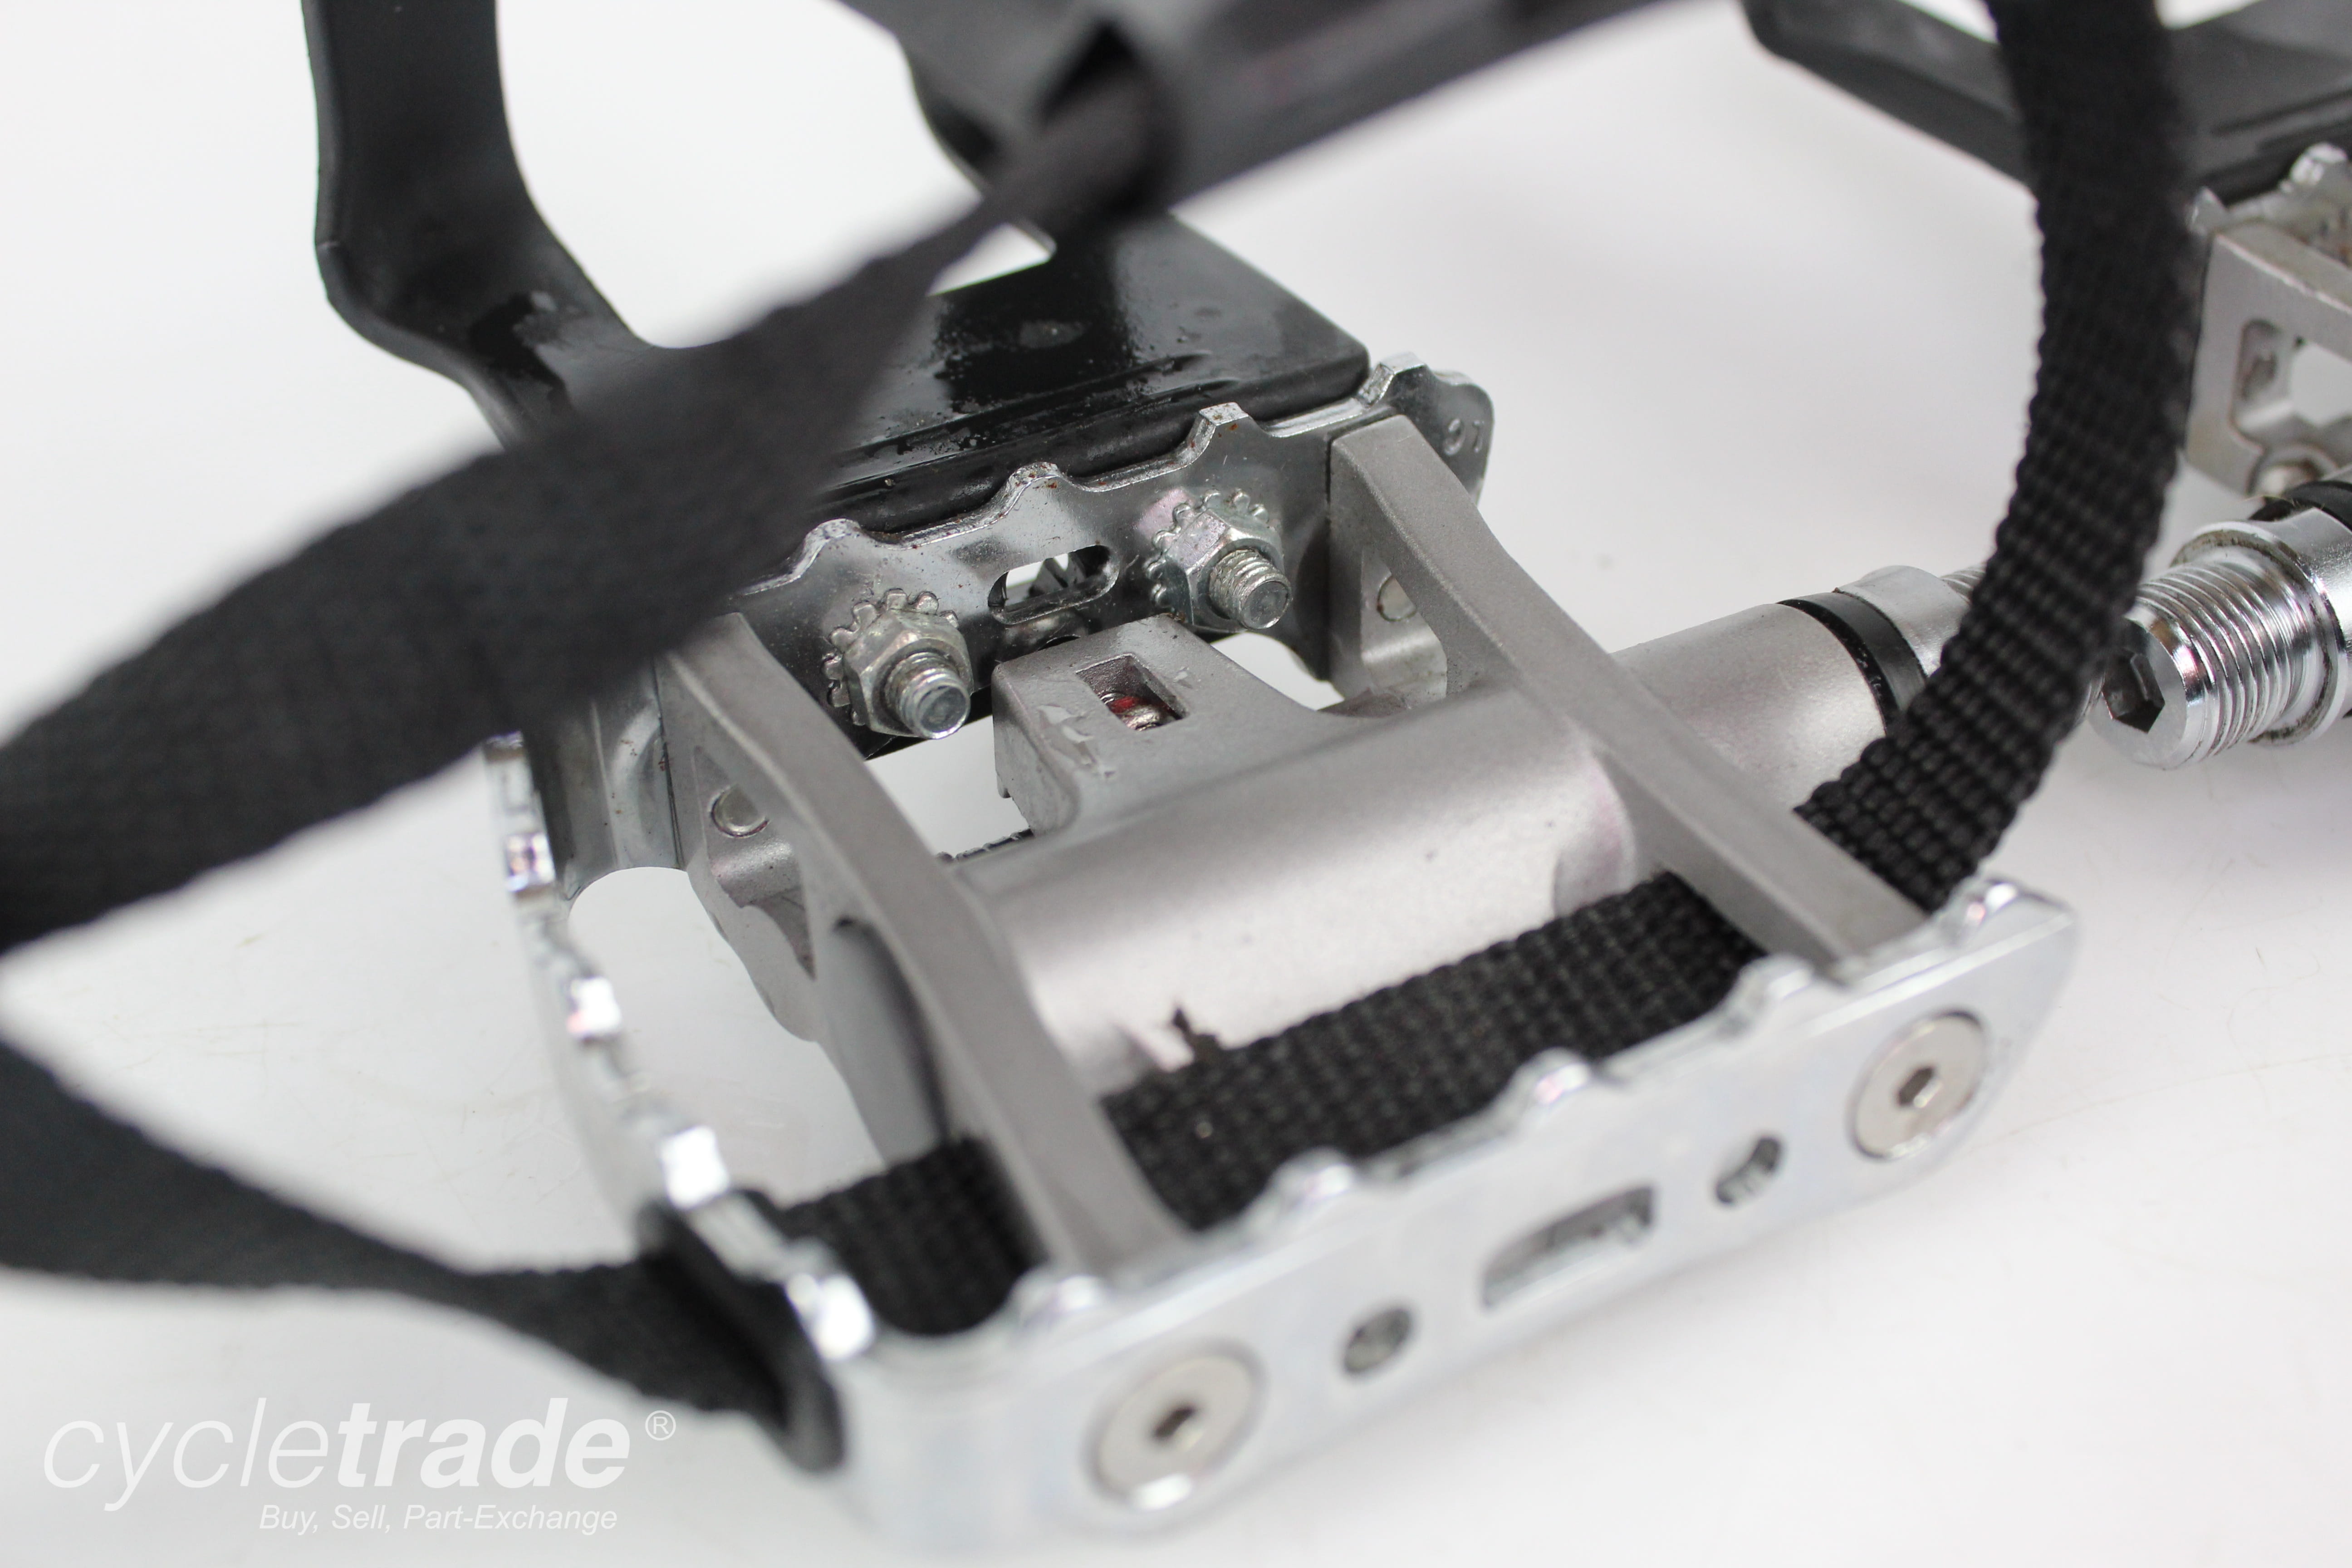 Pedals - Shimano PD-M324 SPD MTB Pedals- Grade B